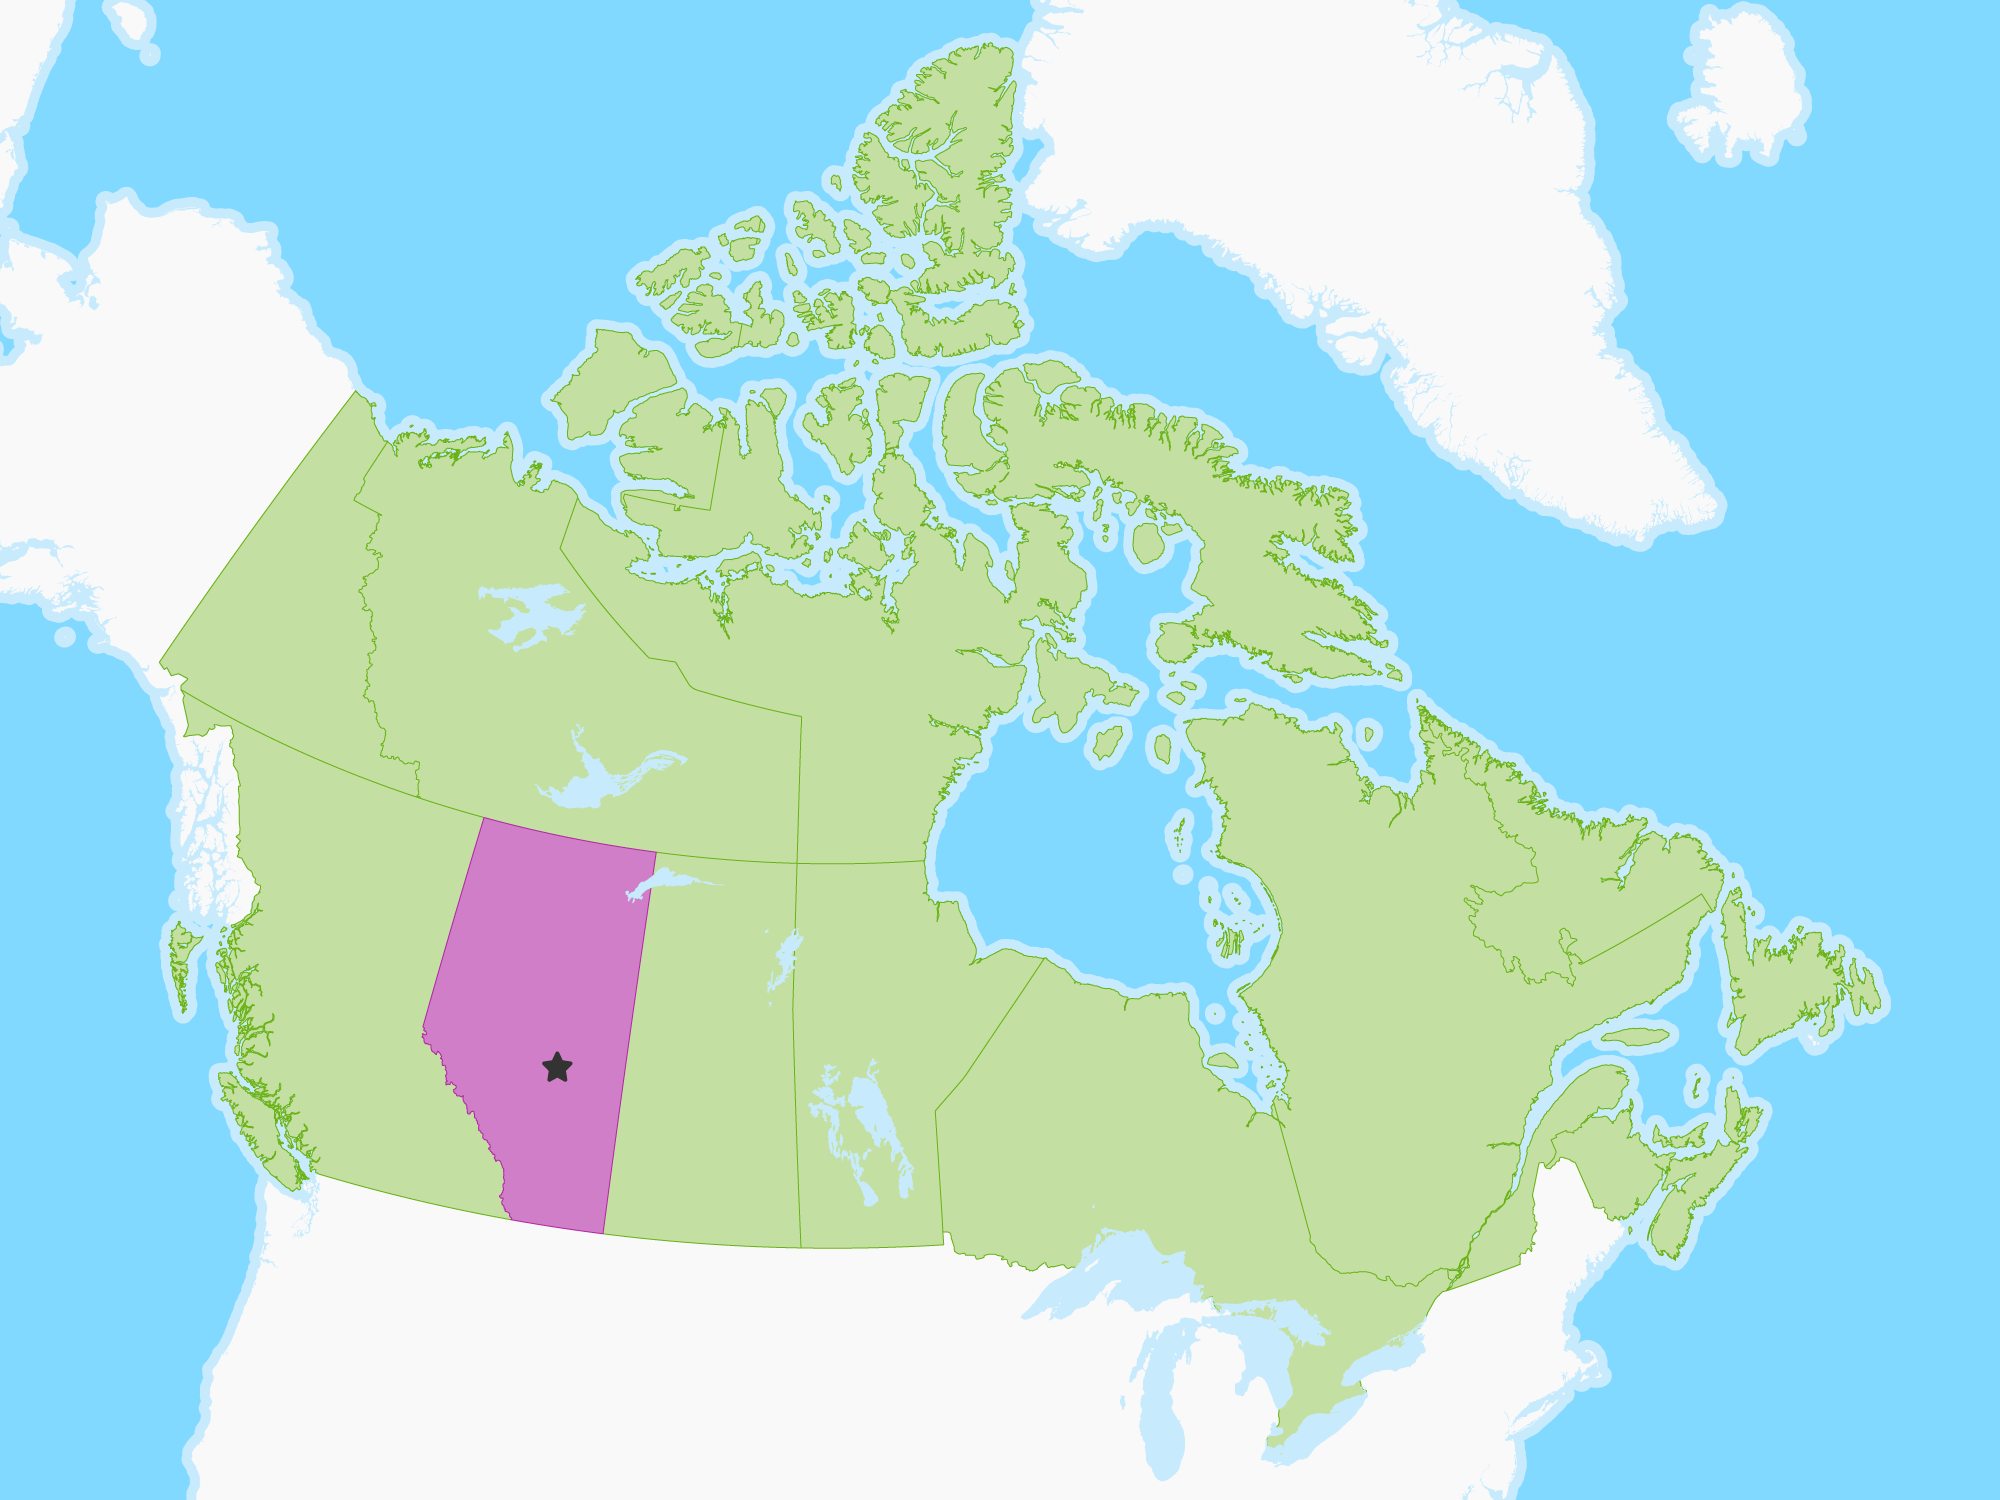 Map of Alberta